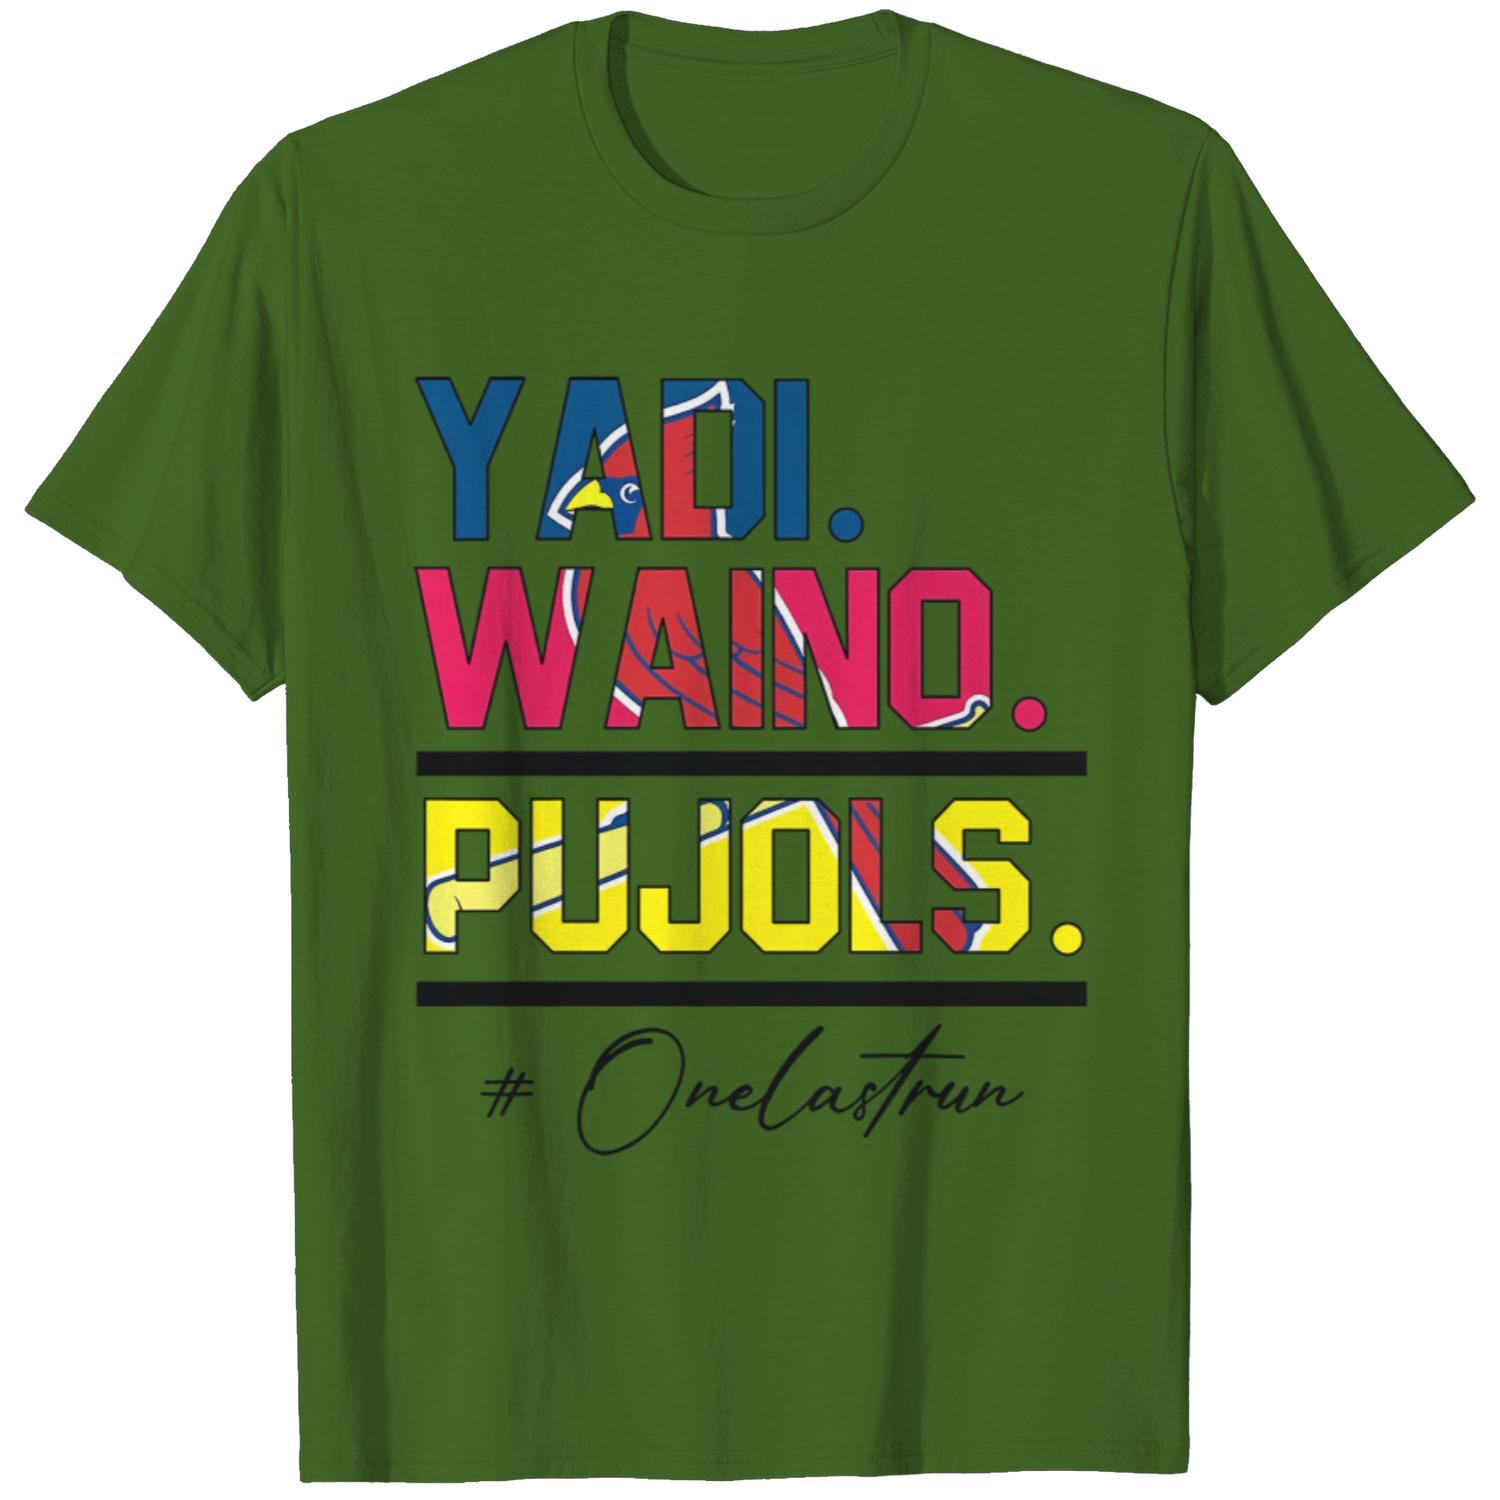 waino pujols yadi shirt